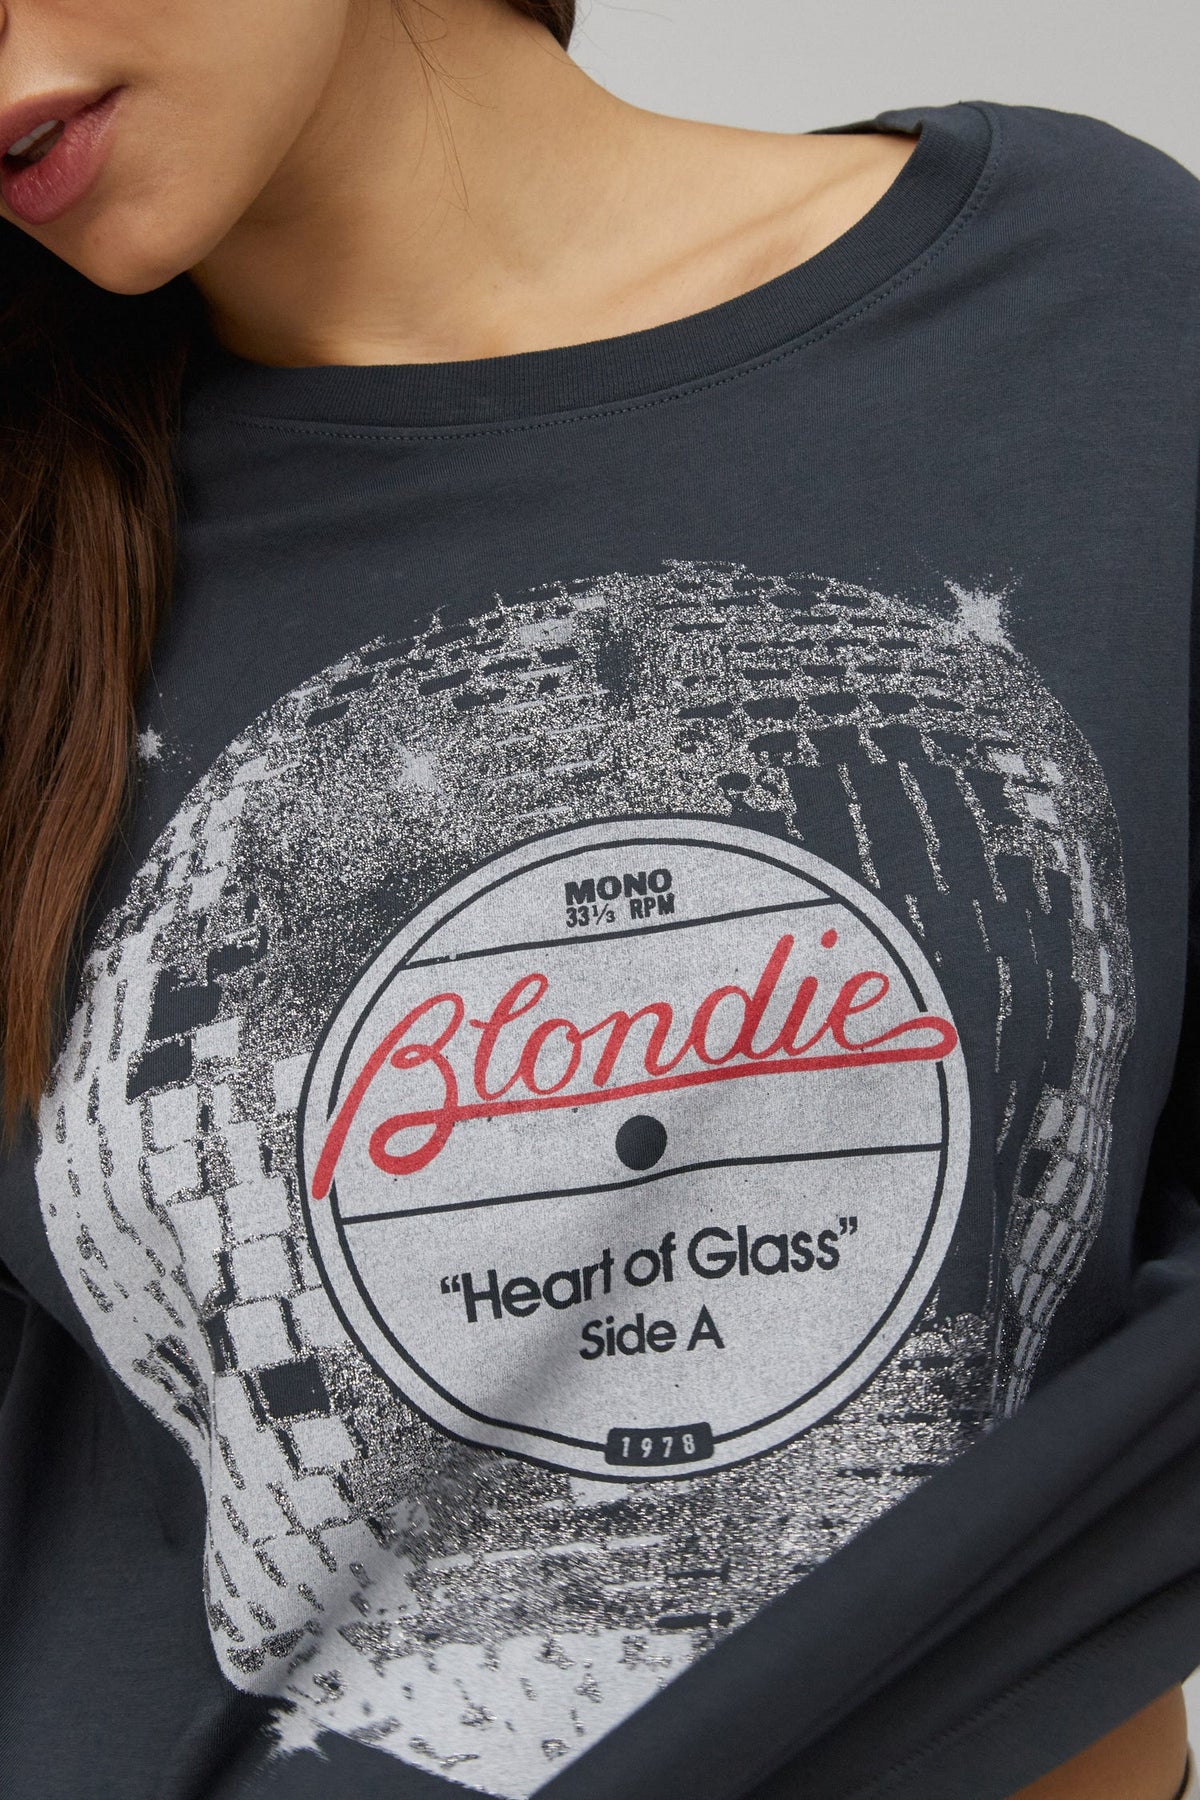 Daydreamer - Blondie - Heart of Glass Disco Boyfriend T Shirt